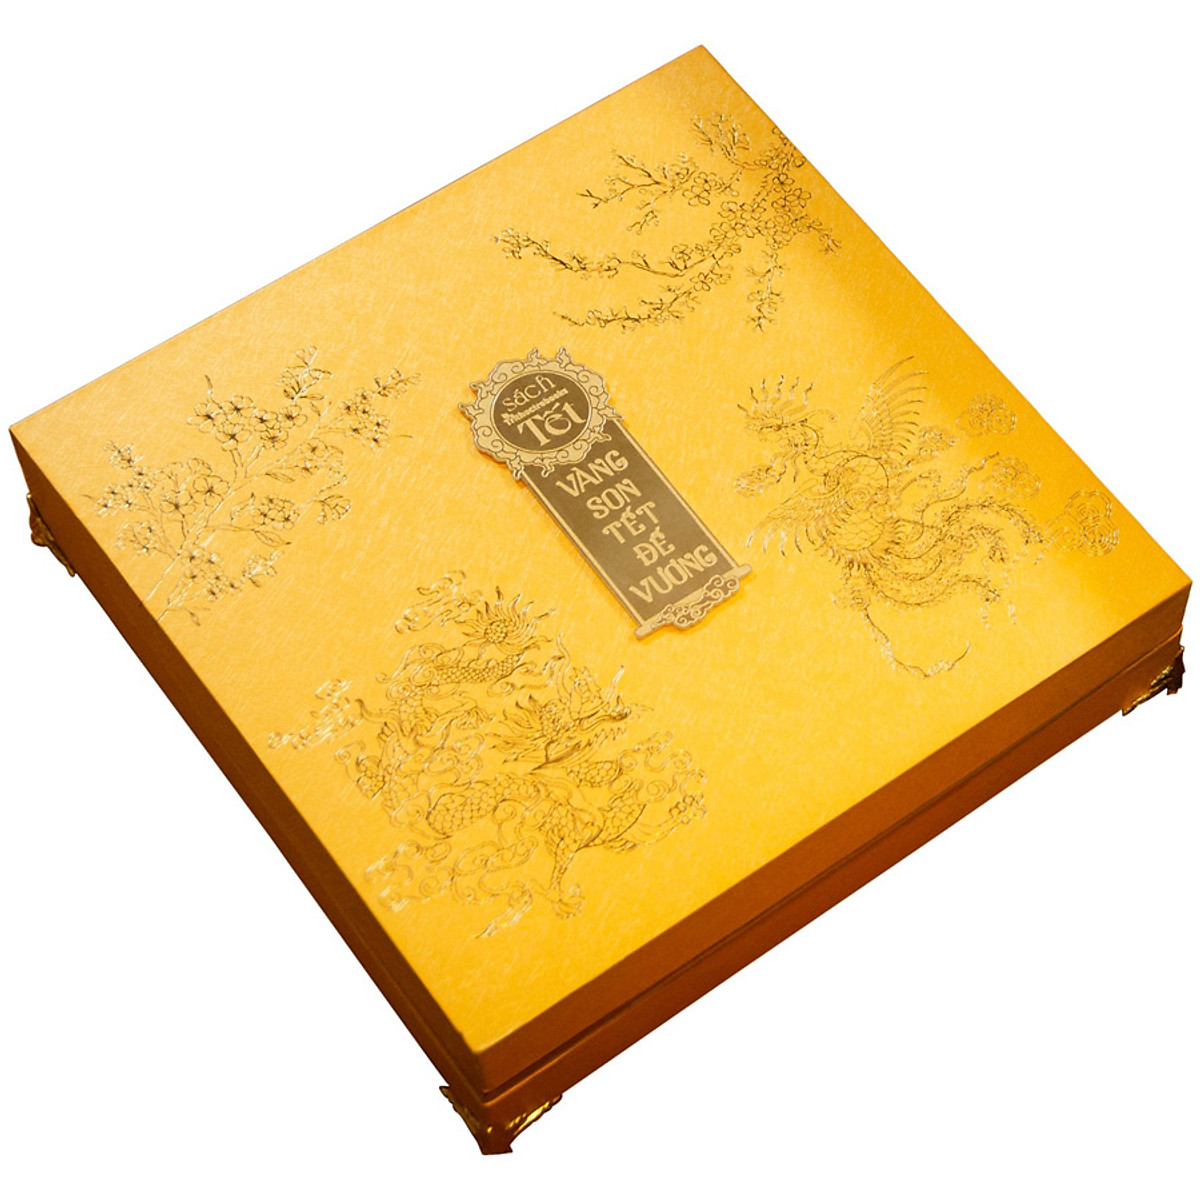 Bộ 2 Cuốn Sách: Vàng Son Tết Đế Vương (2 Tập) - Bản Giới Hạn Được Đánh Số Từ: 1 Đến 100 (Giao Số Ngẫu Nhiên) [Hộp Sách Gồm : Hộp Đựng 28 x 28 cm + 2 Cuốn Sách Tết + Bộ Trò Chơi Giân Gian : Cờ Đăng Khoa + Tấm Hổ Phù Làm Từ Sơn Khắc Nghệ